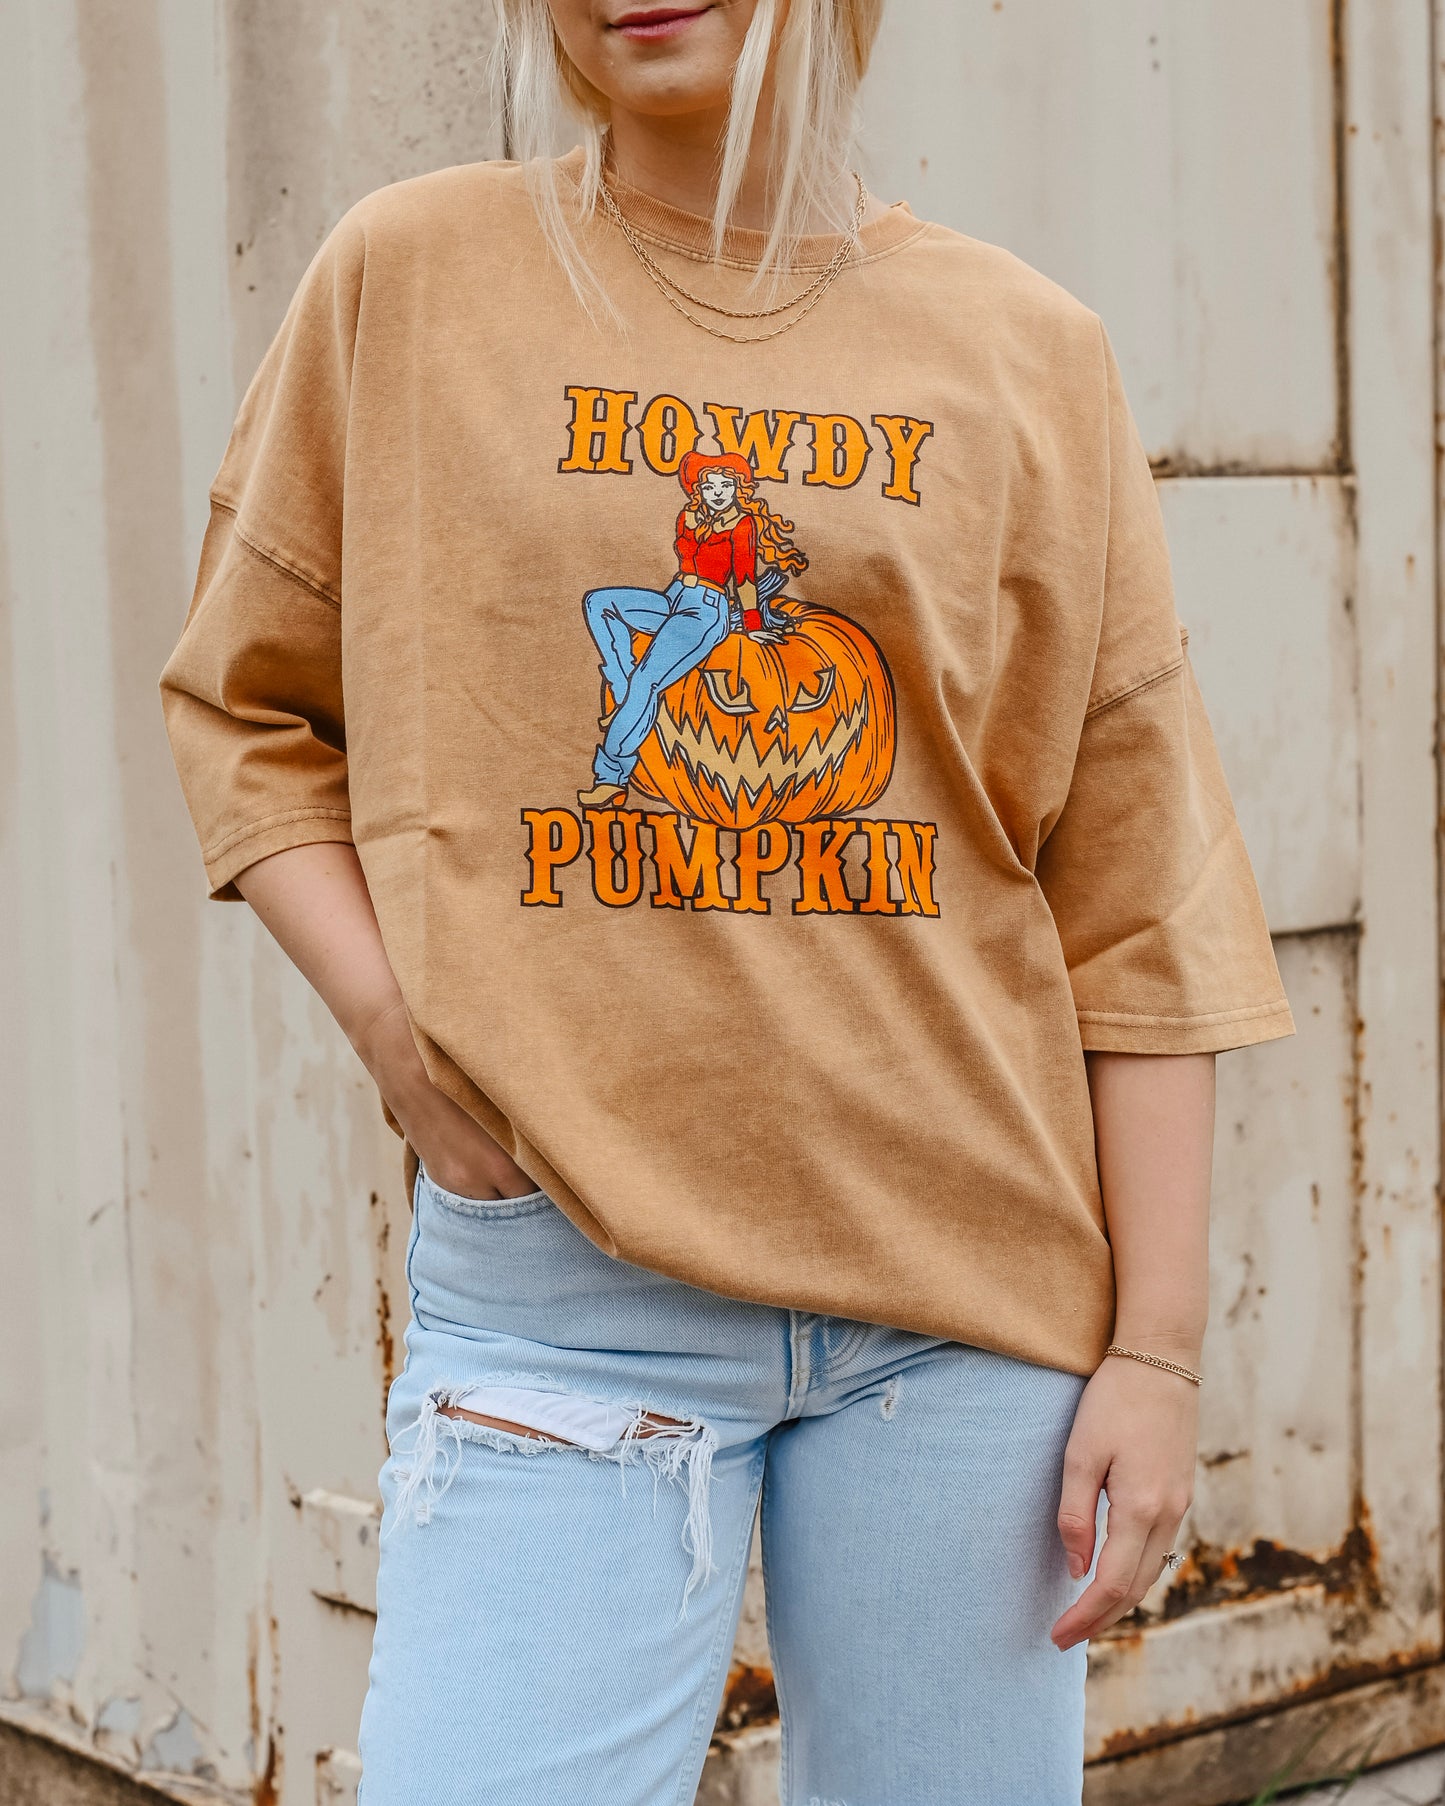 Howdy Pumpkin Oversized Tee Shirt // SHARE STUDIO BRAND